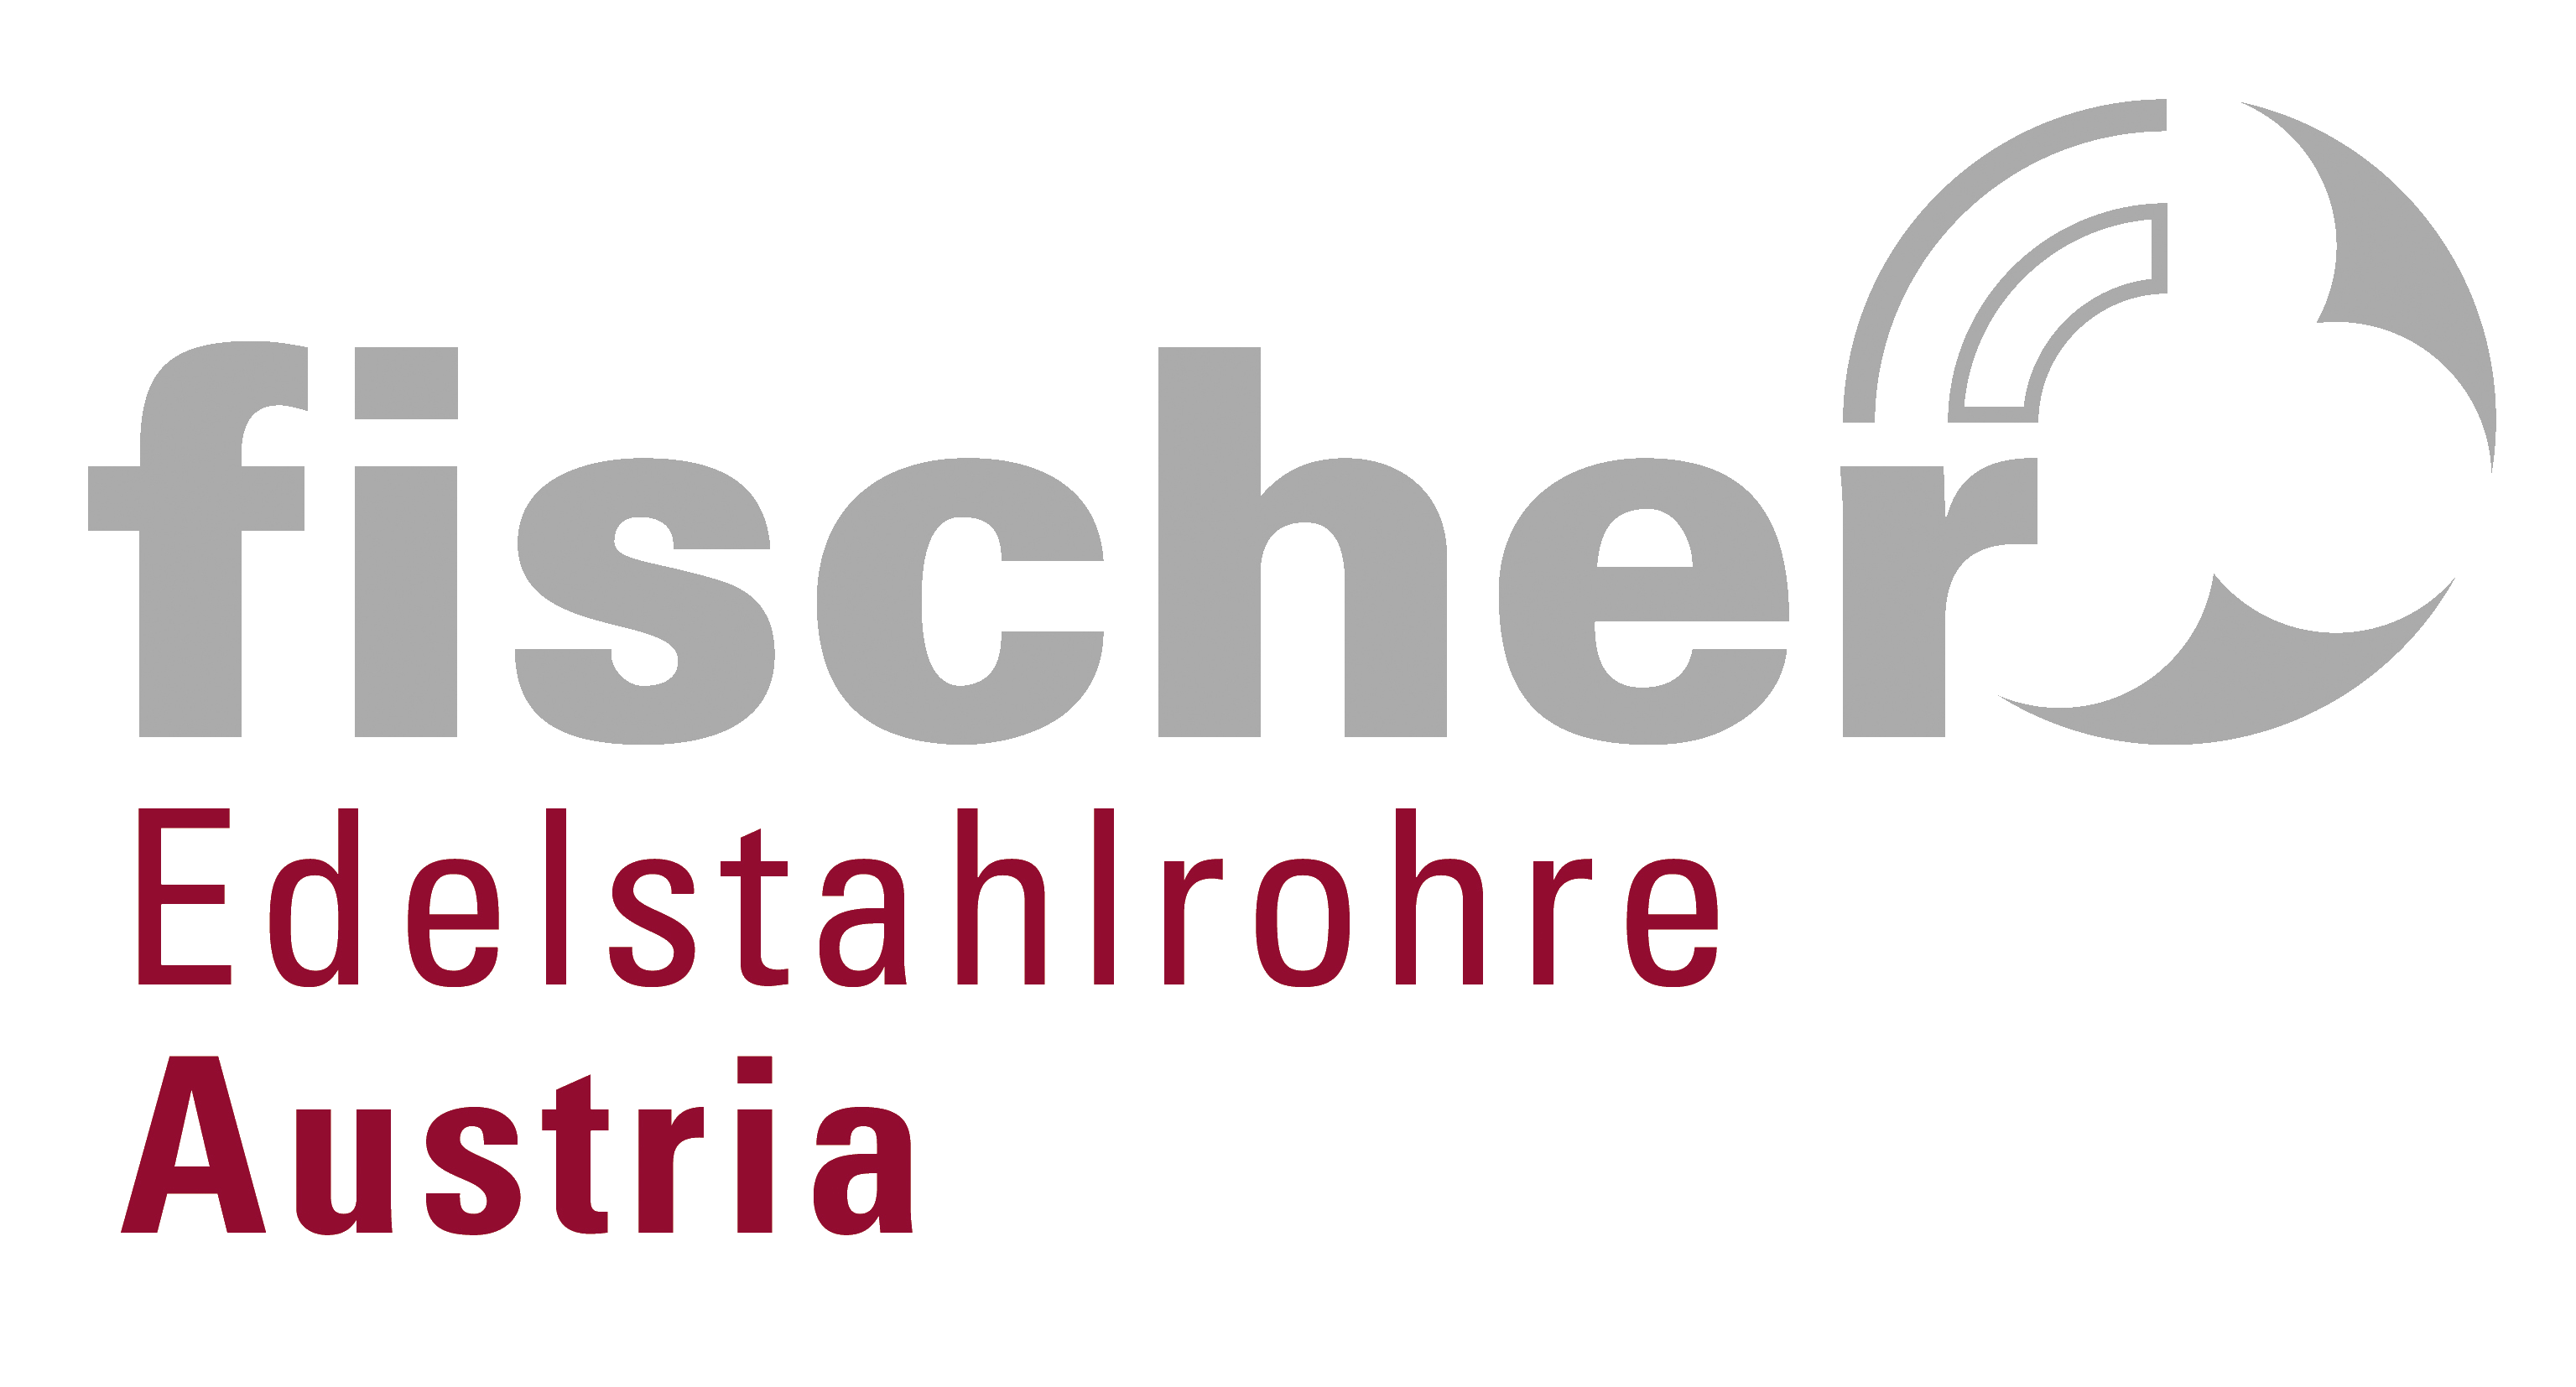 fischer Edelstahlrohre Austria